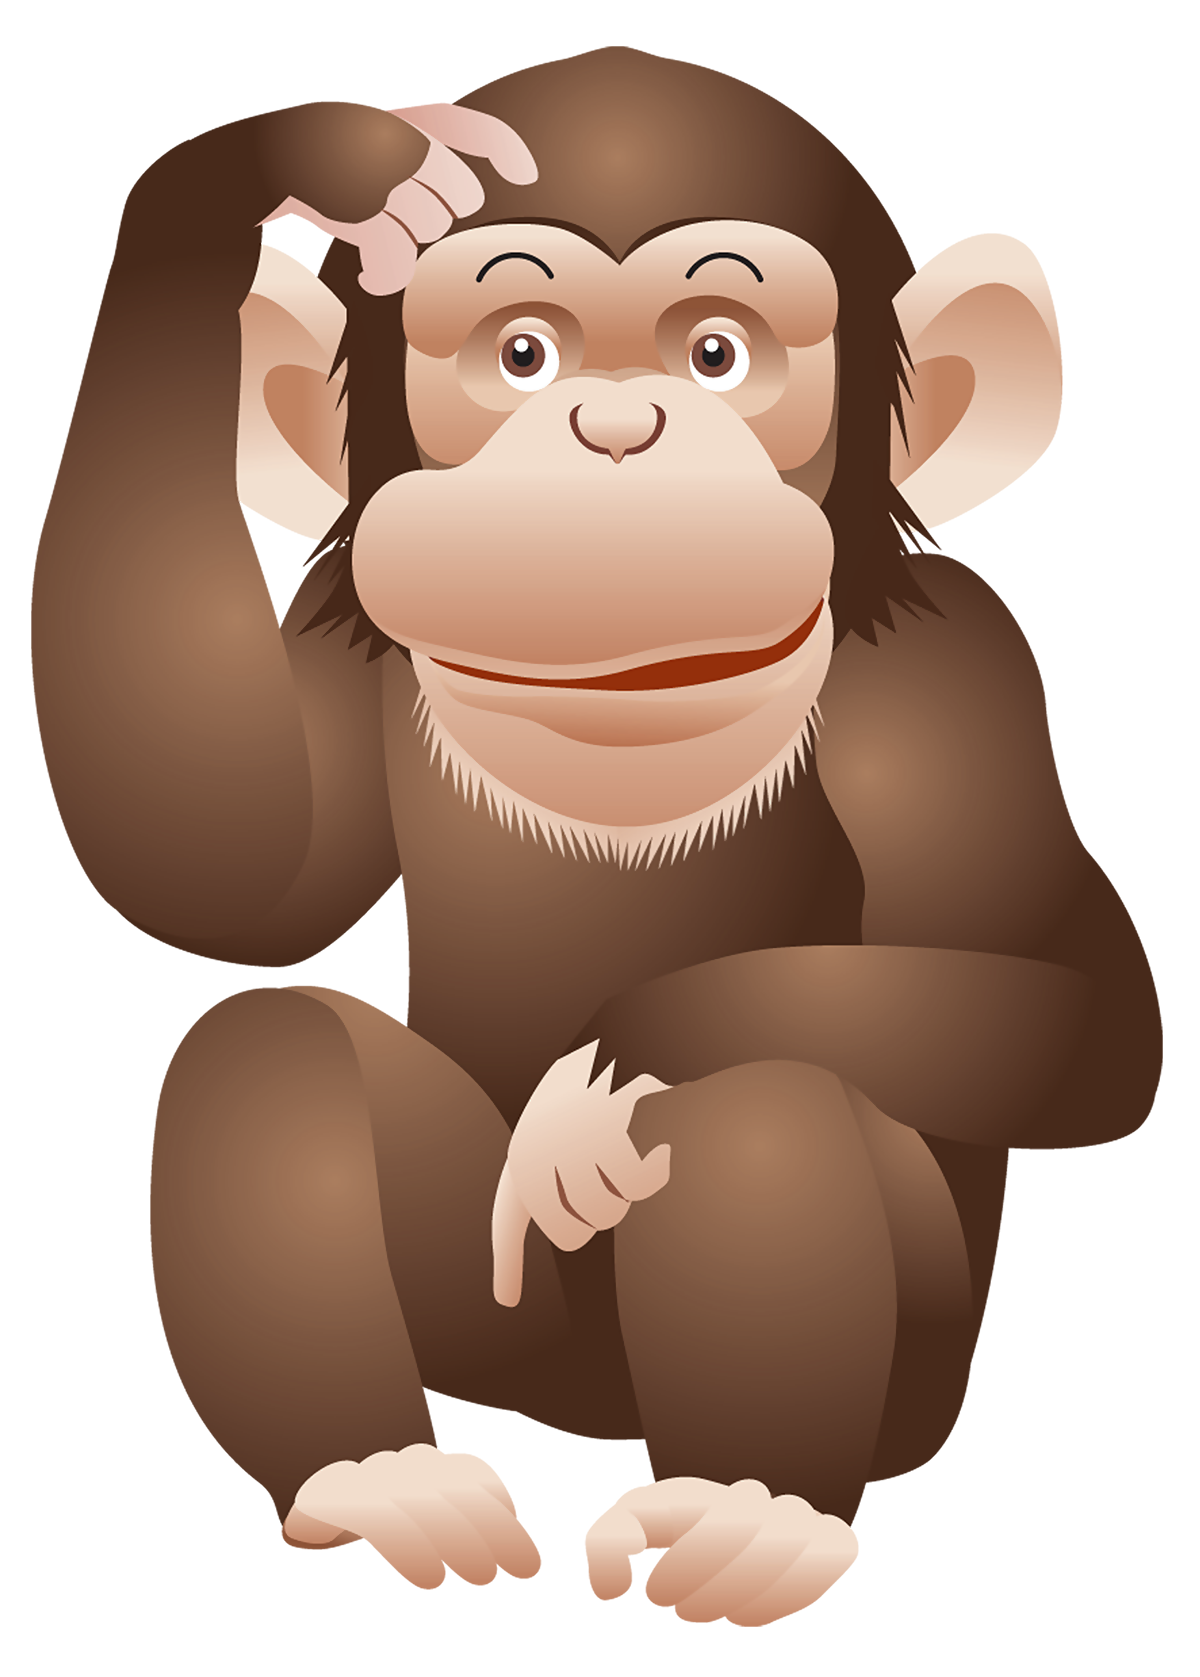 500 Macaco Fofo Fotos, Imagens e Fundo para Download Gratuito - Pngtree